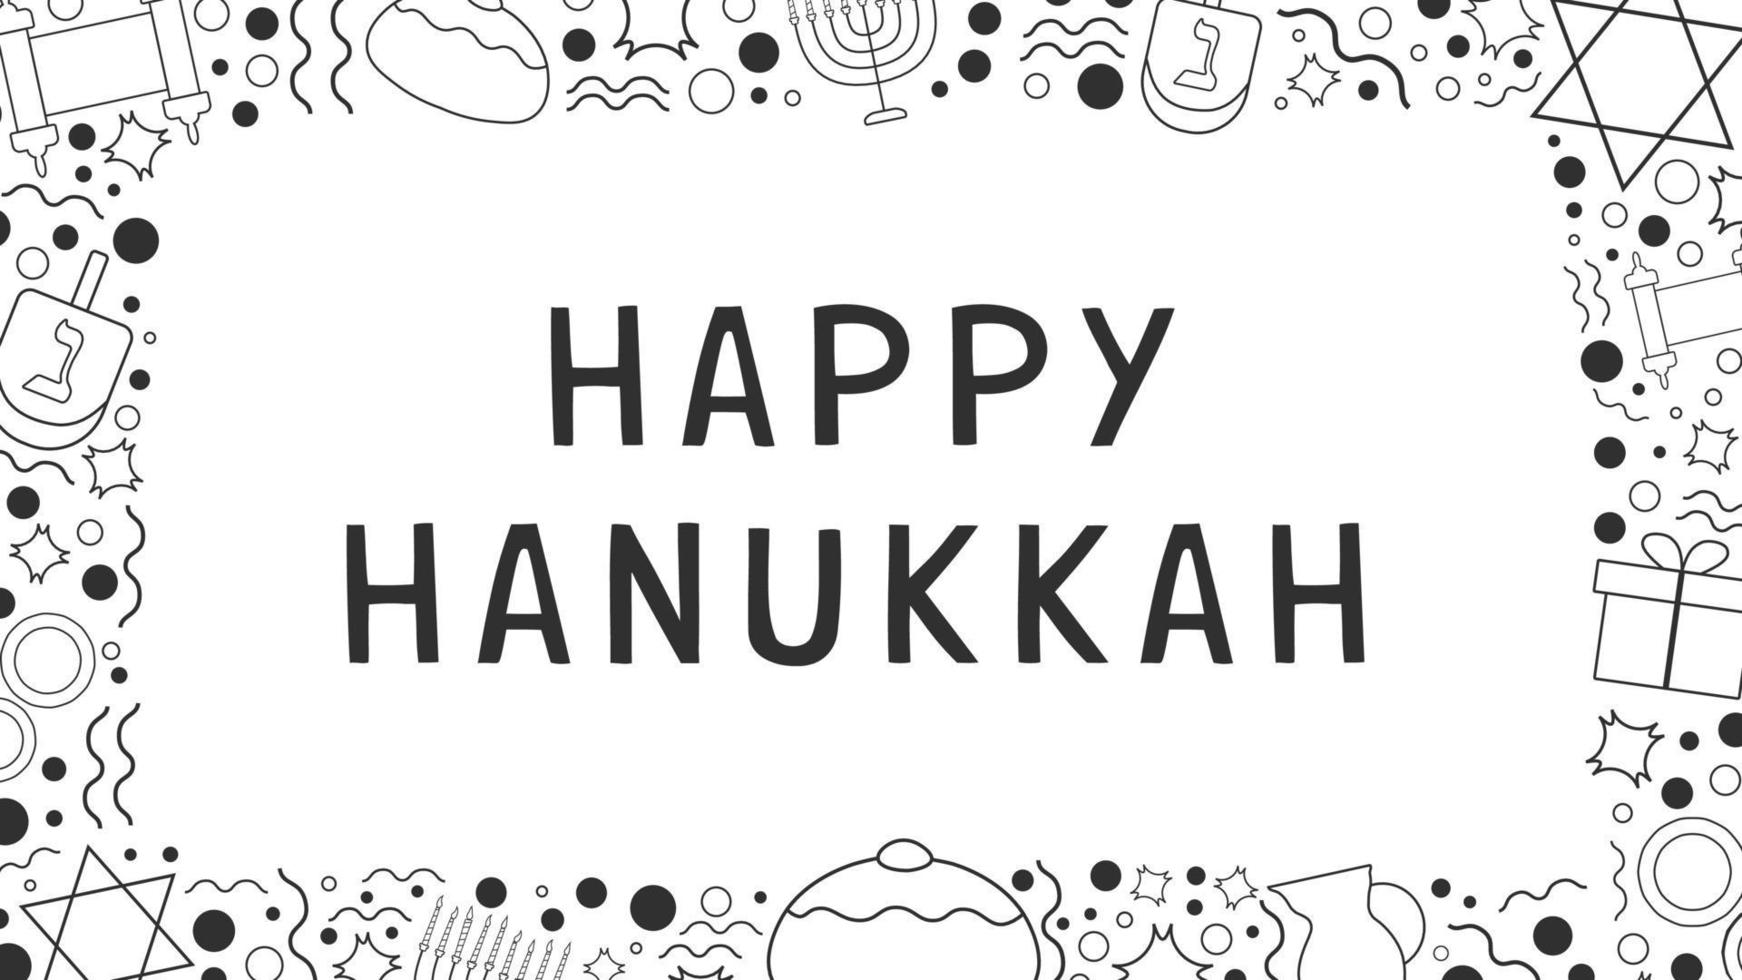 marco con diseño plano de vacaciones de hanukkah iconos de líneas finas negras con texto en inglés vector